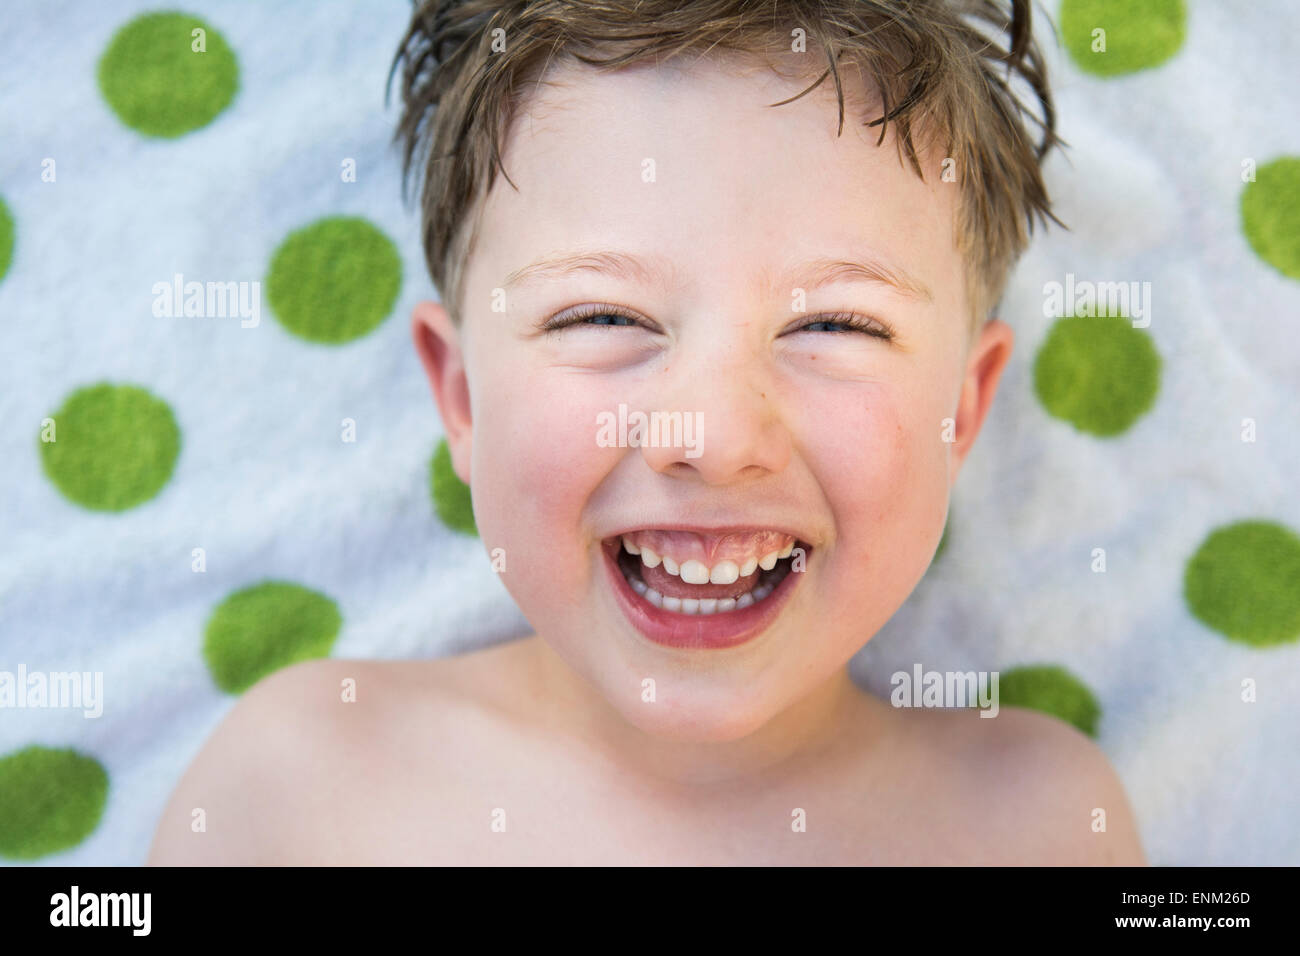 Close-up of toddler boy's smiling face avec green poca-serviette en pointillé dans l'arrière-plan Chico, Californie. Banque D'Images